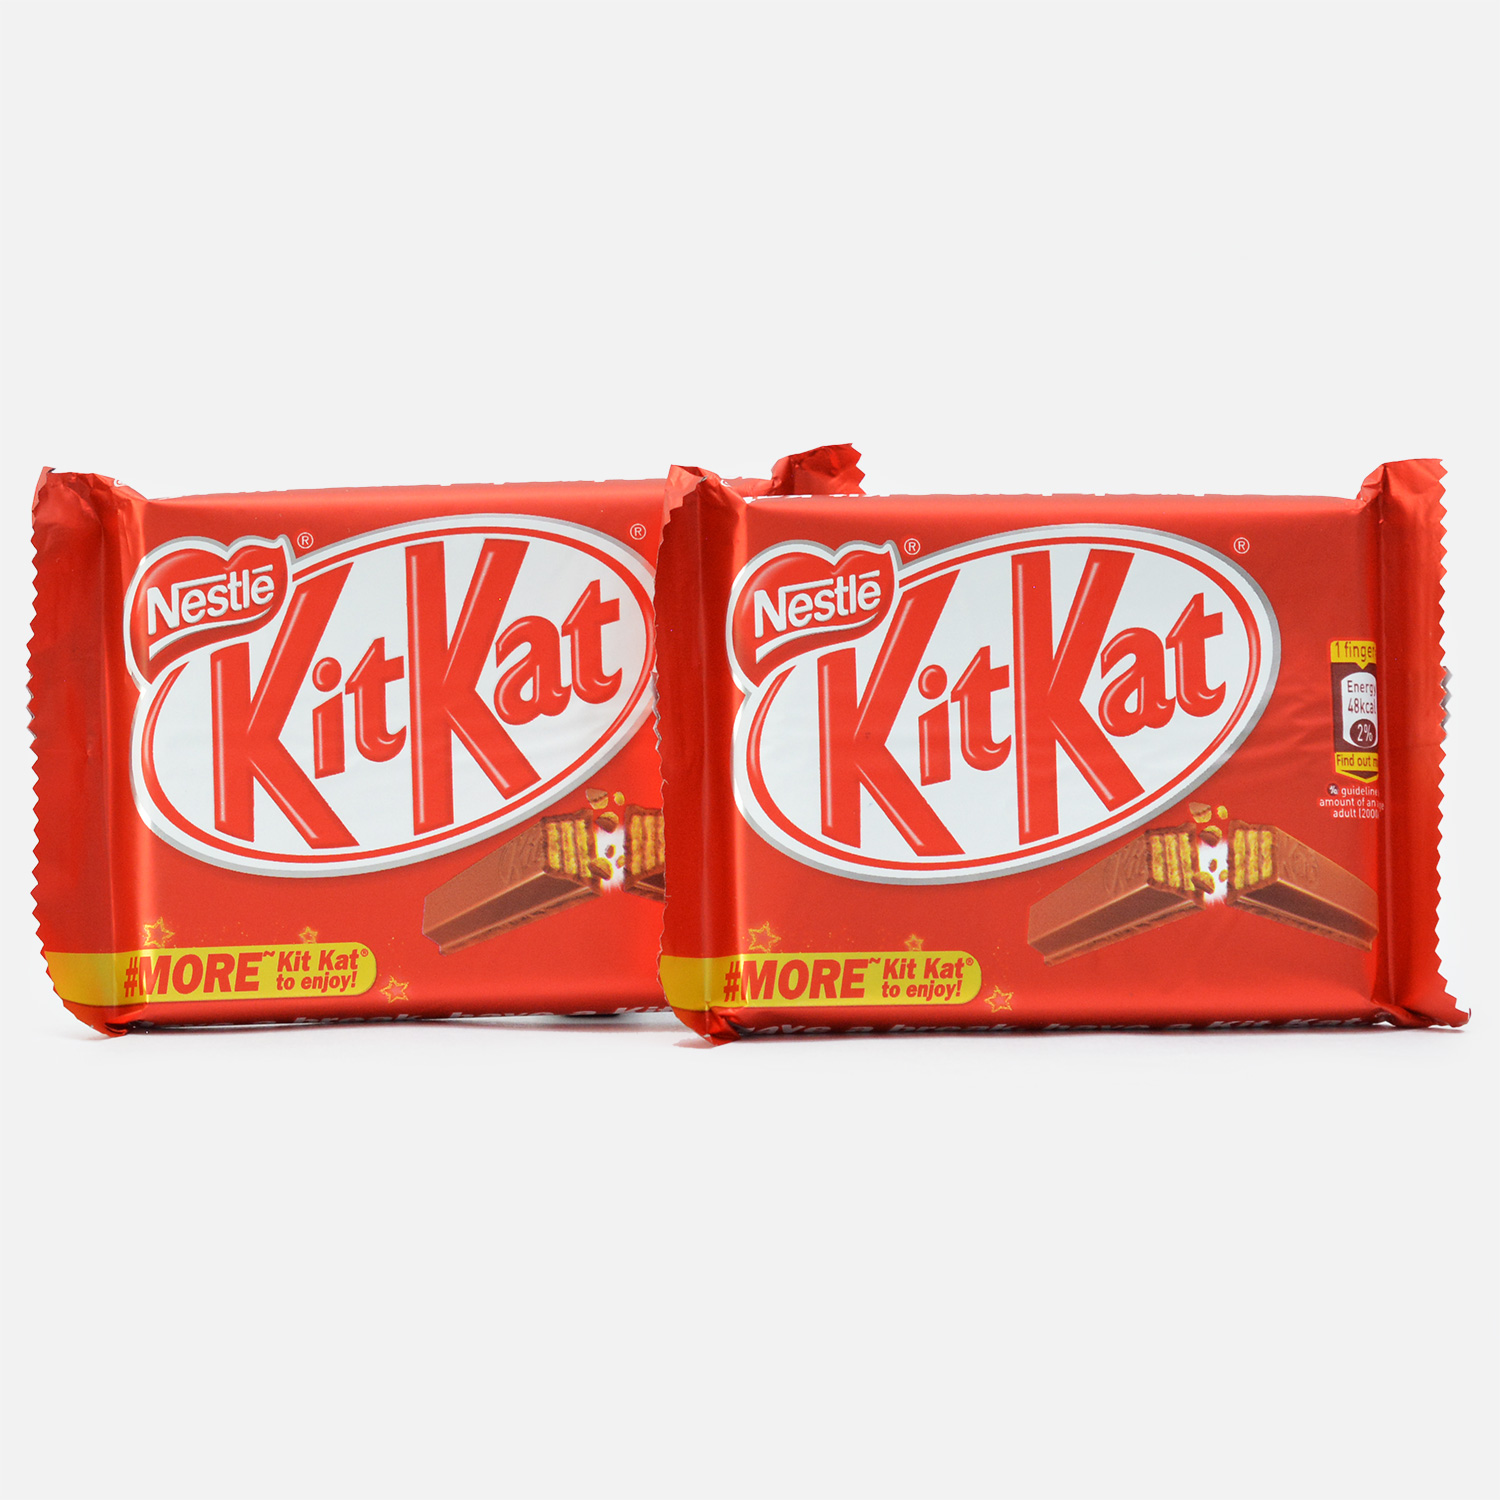 Nestle Kitkat Set of 2 packs